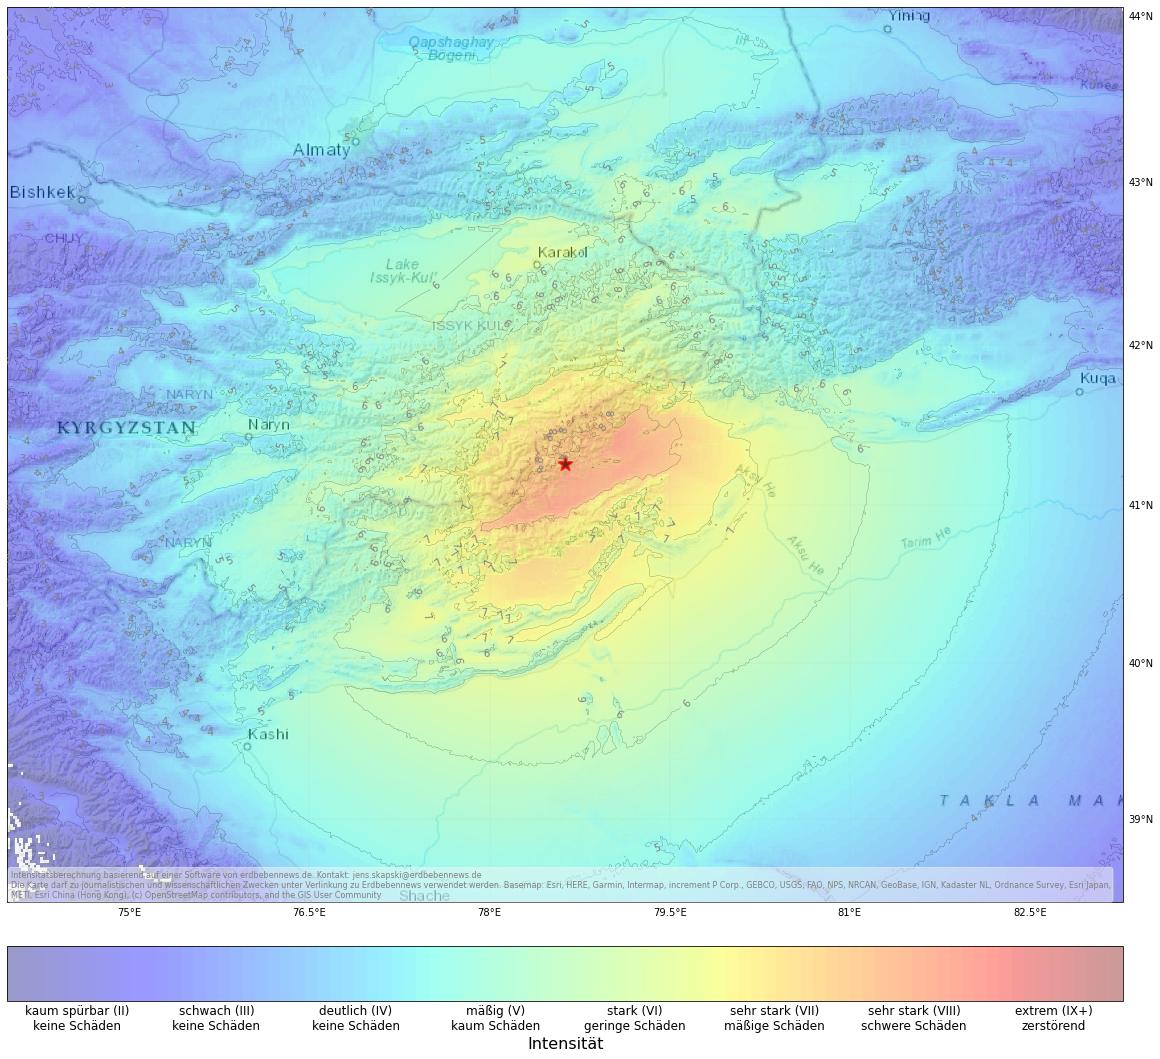 Berechnete Intensität (ShakeMap) des Erdbebens der Stärke 7.1 am 22. Januar, 19:09 Uhr in China